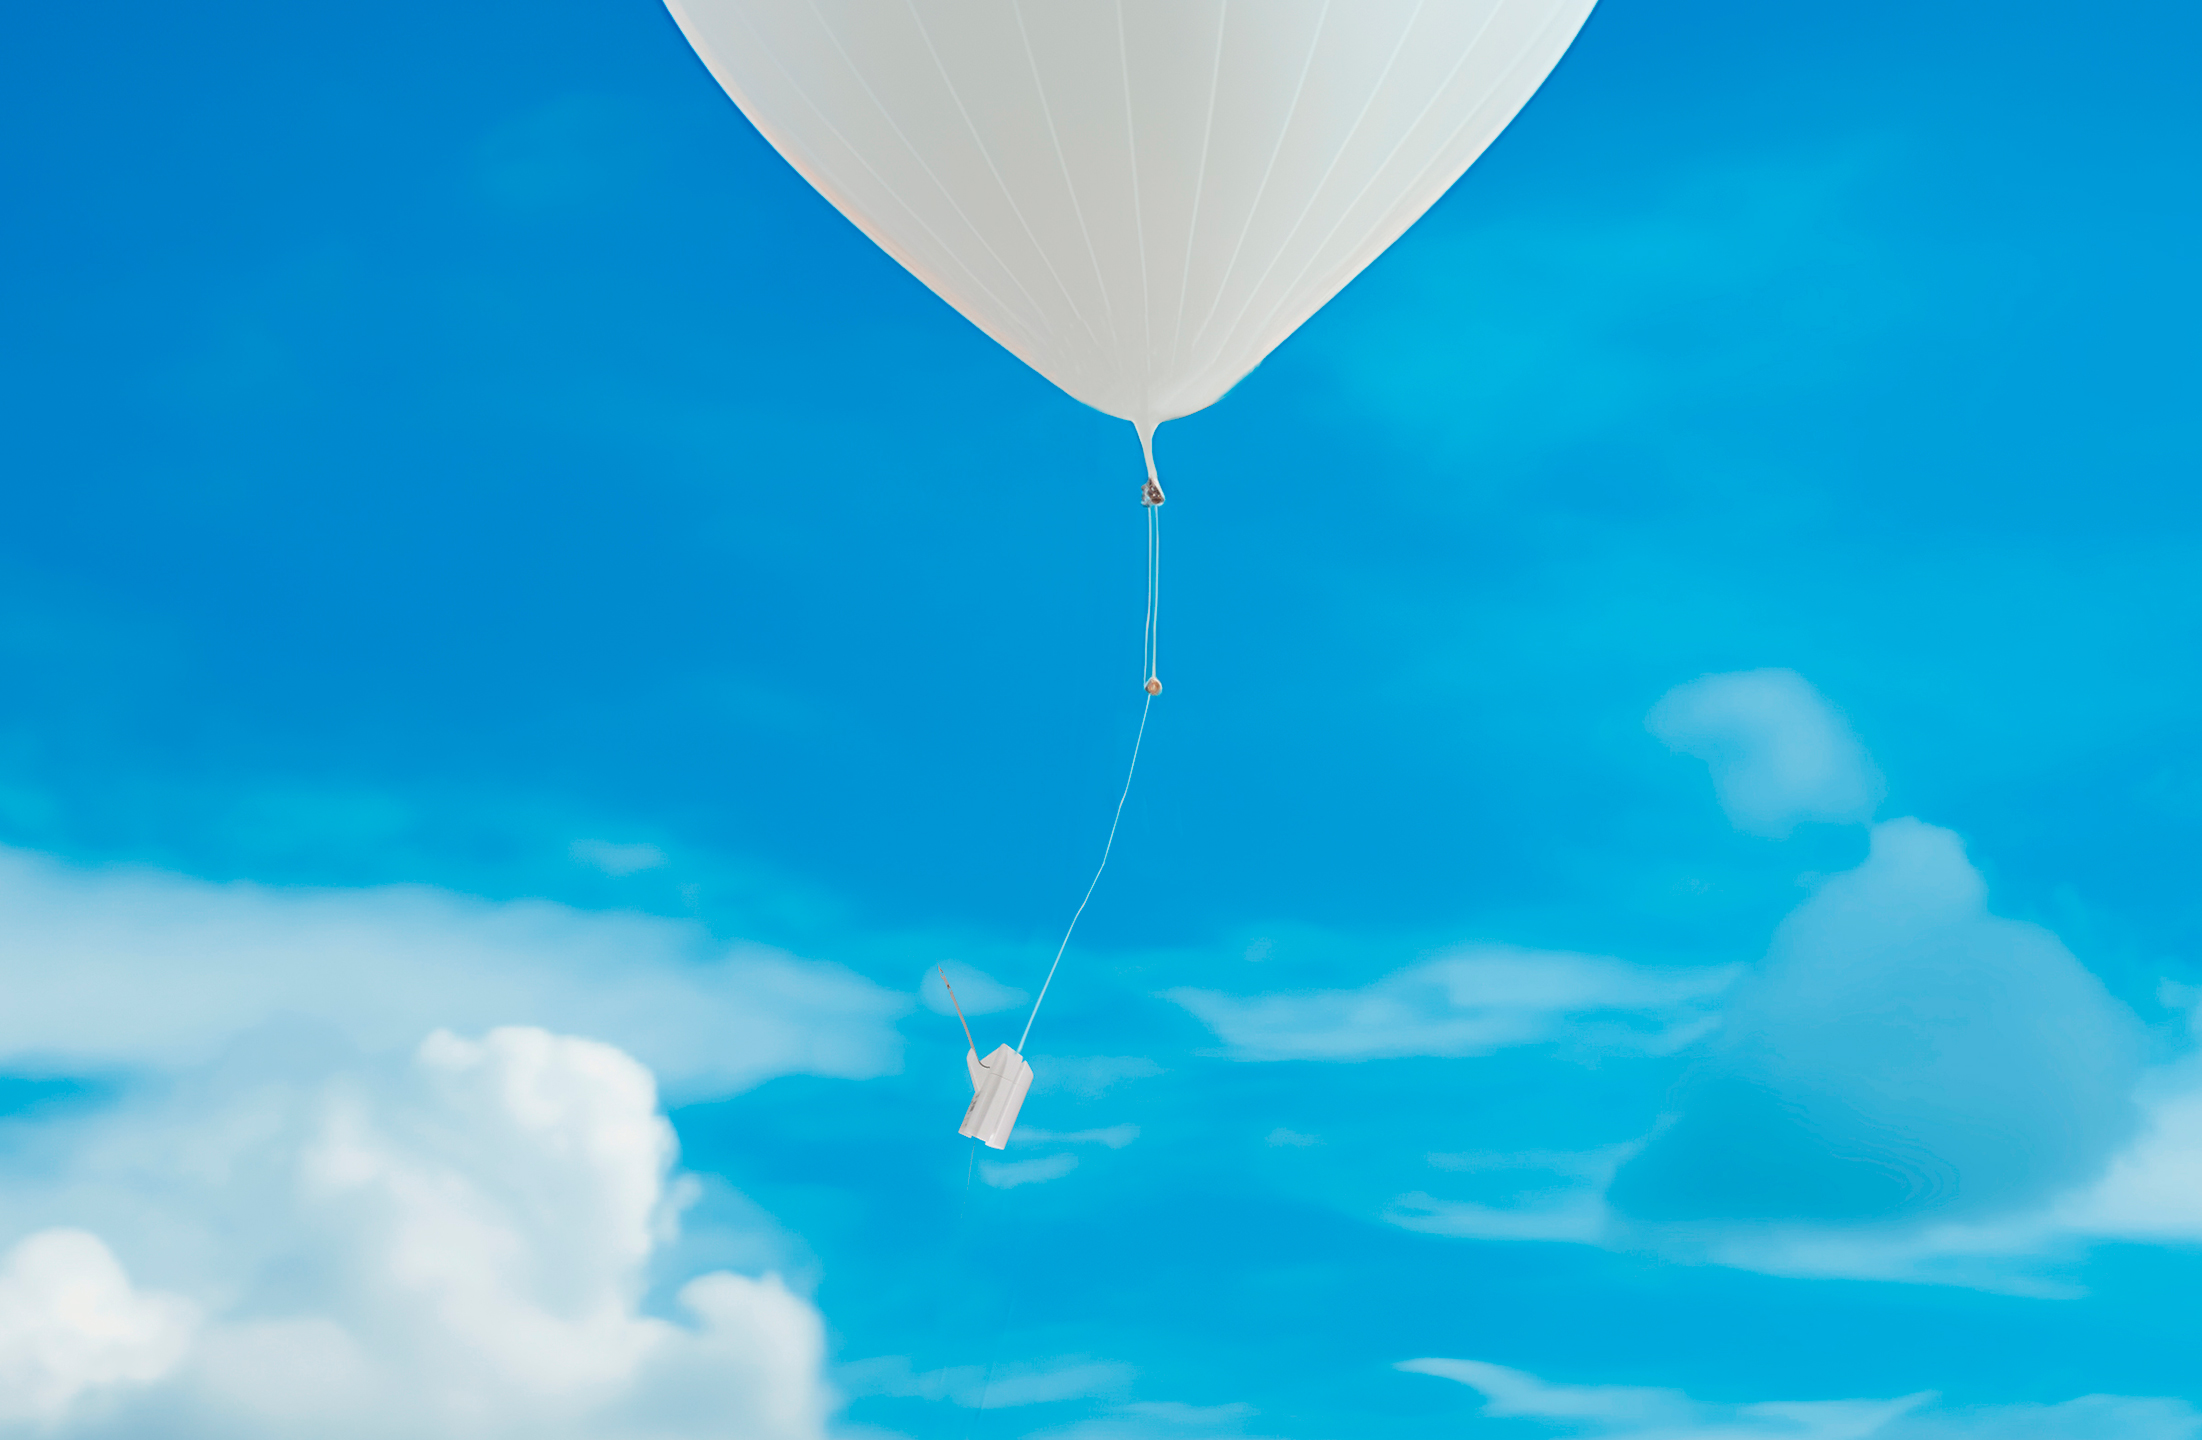 Das Bild zeigt einen weißen Ballon mit einer weißen Radiosonde. Im Hintergrund ist ein strahlend blauer Himmel mit einigen Wolken zu sehen.